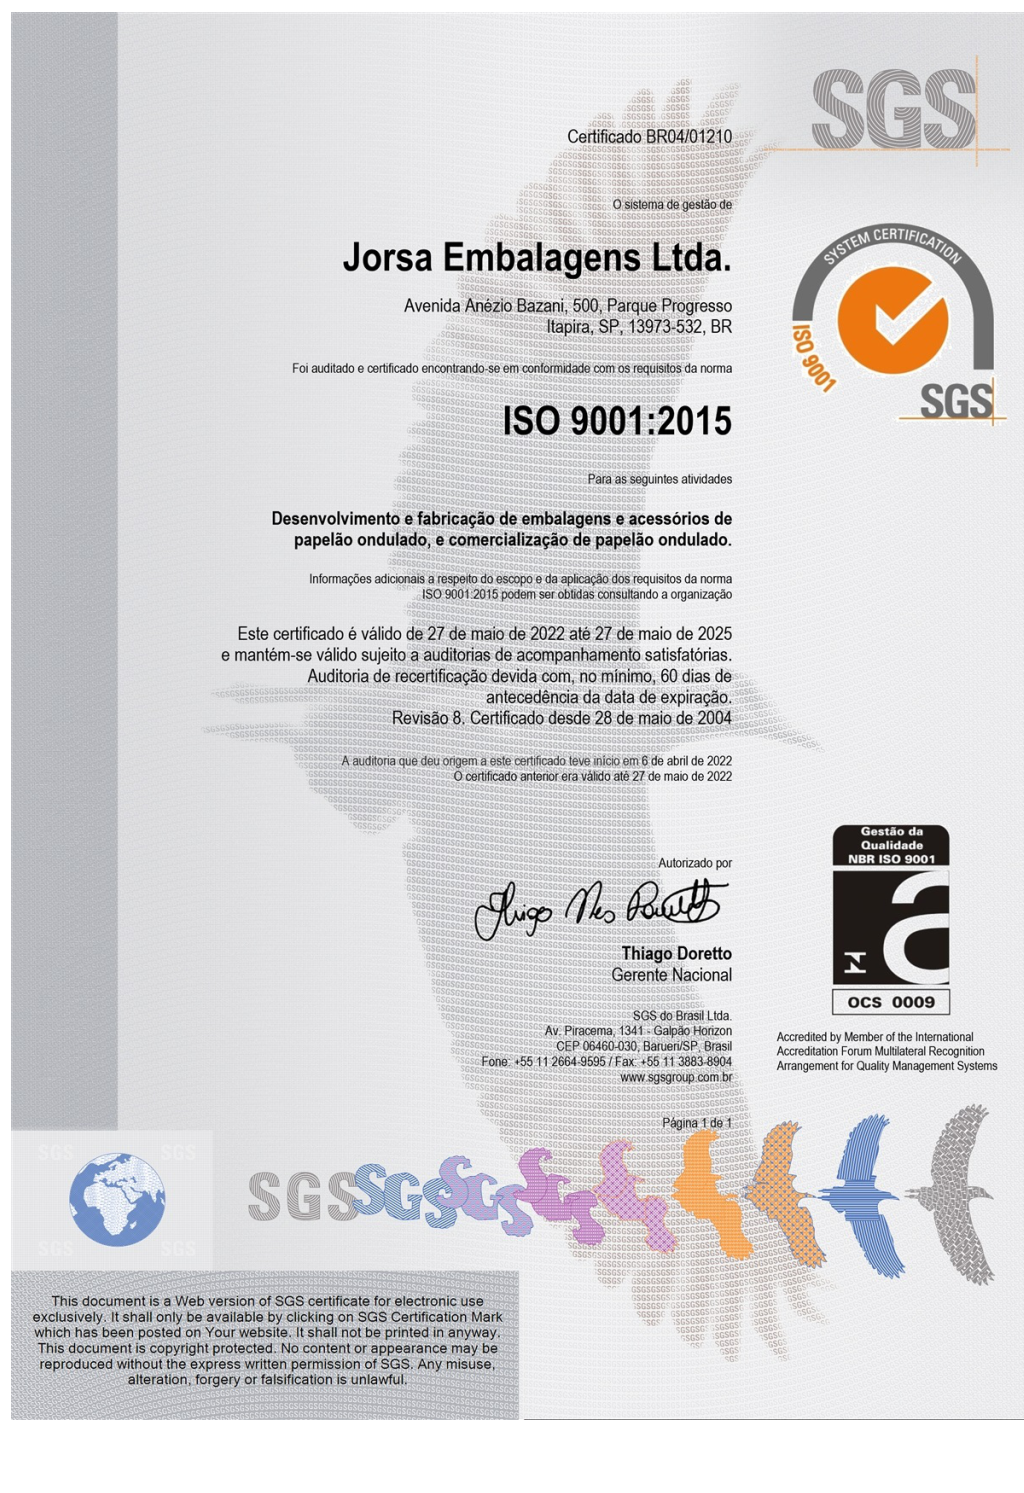 Jorsa ganha certificado ISO 9001 em abril de 2.004